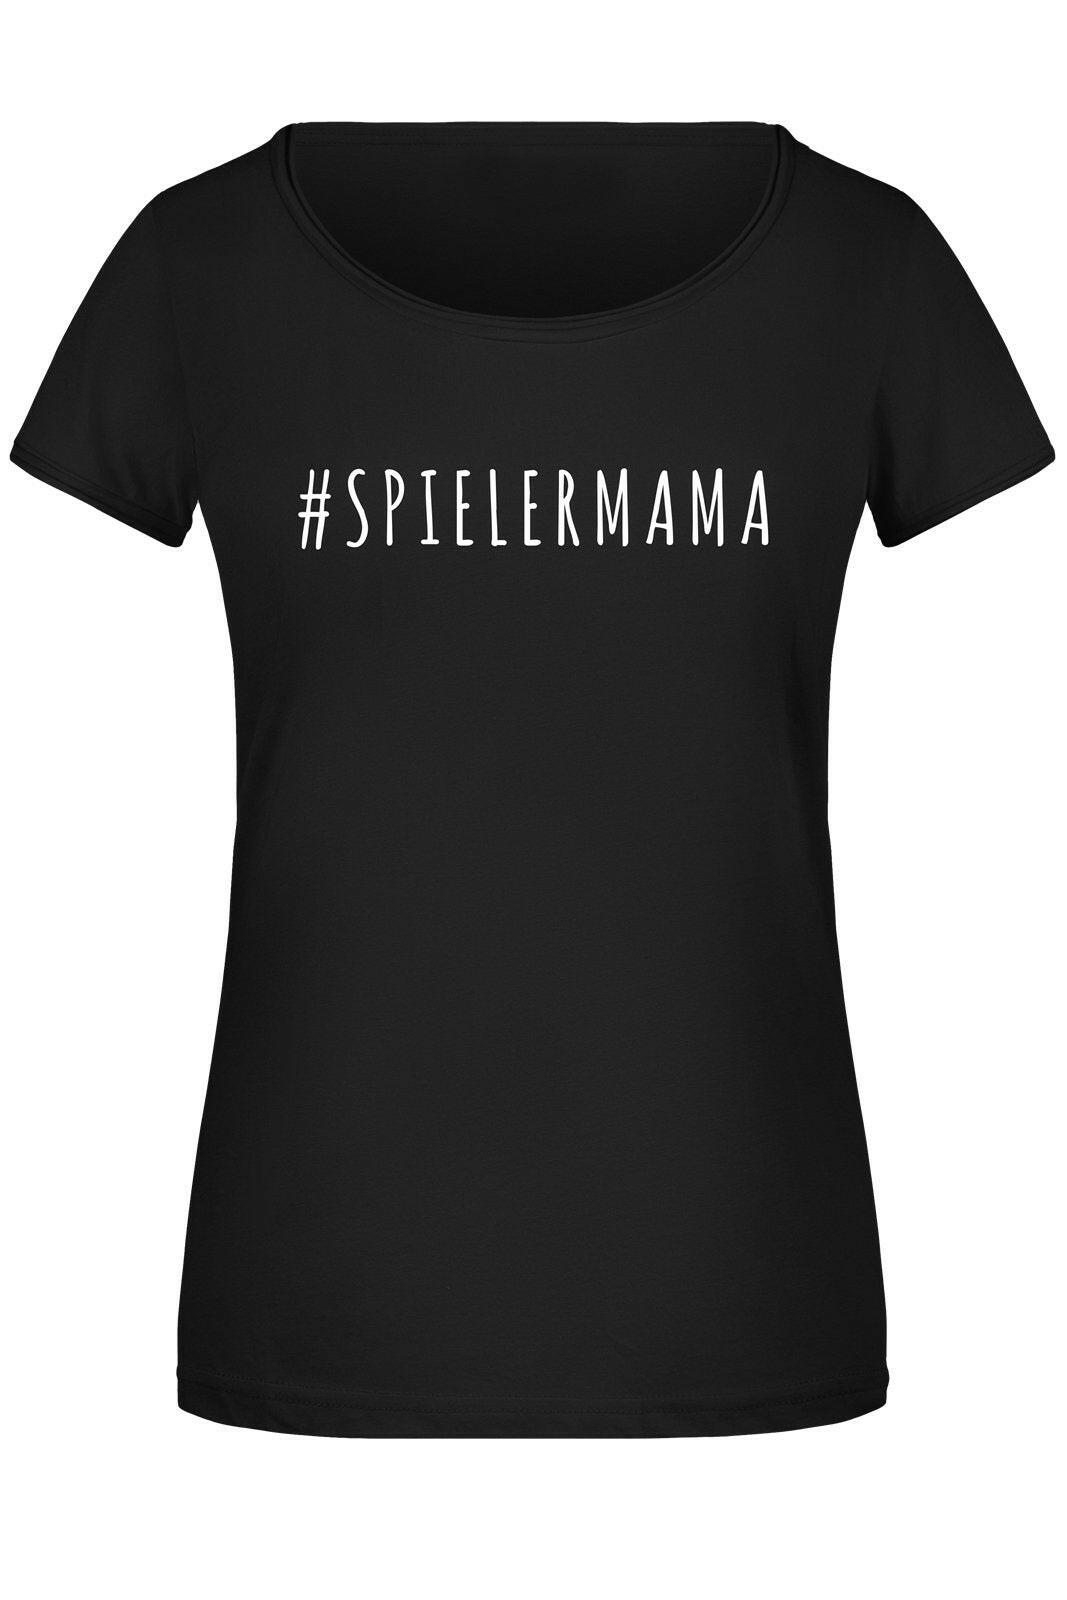 Bild: T-Shirt Damen - #Spielermama Geschenkidee